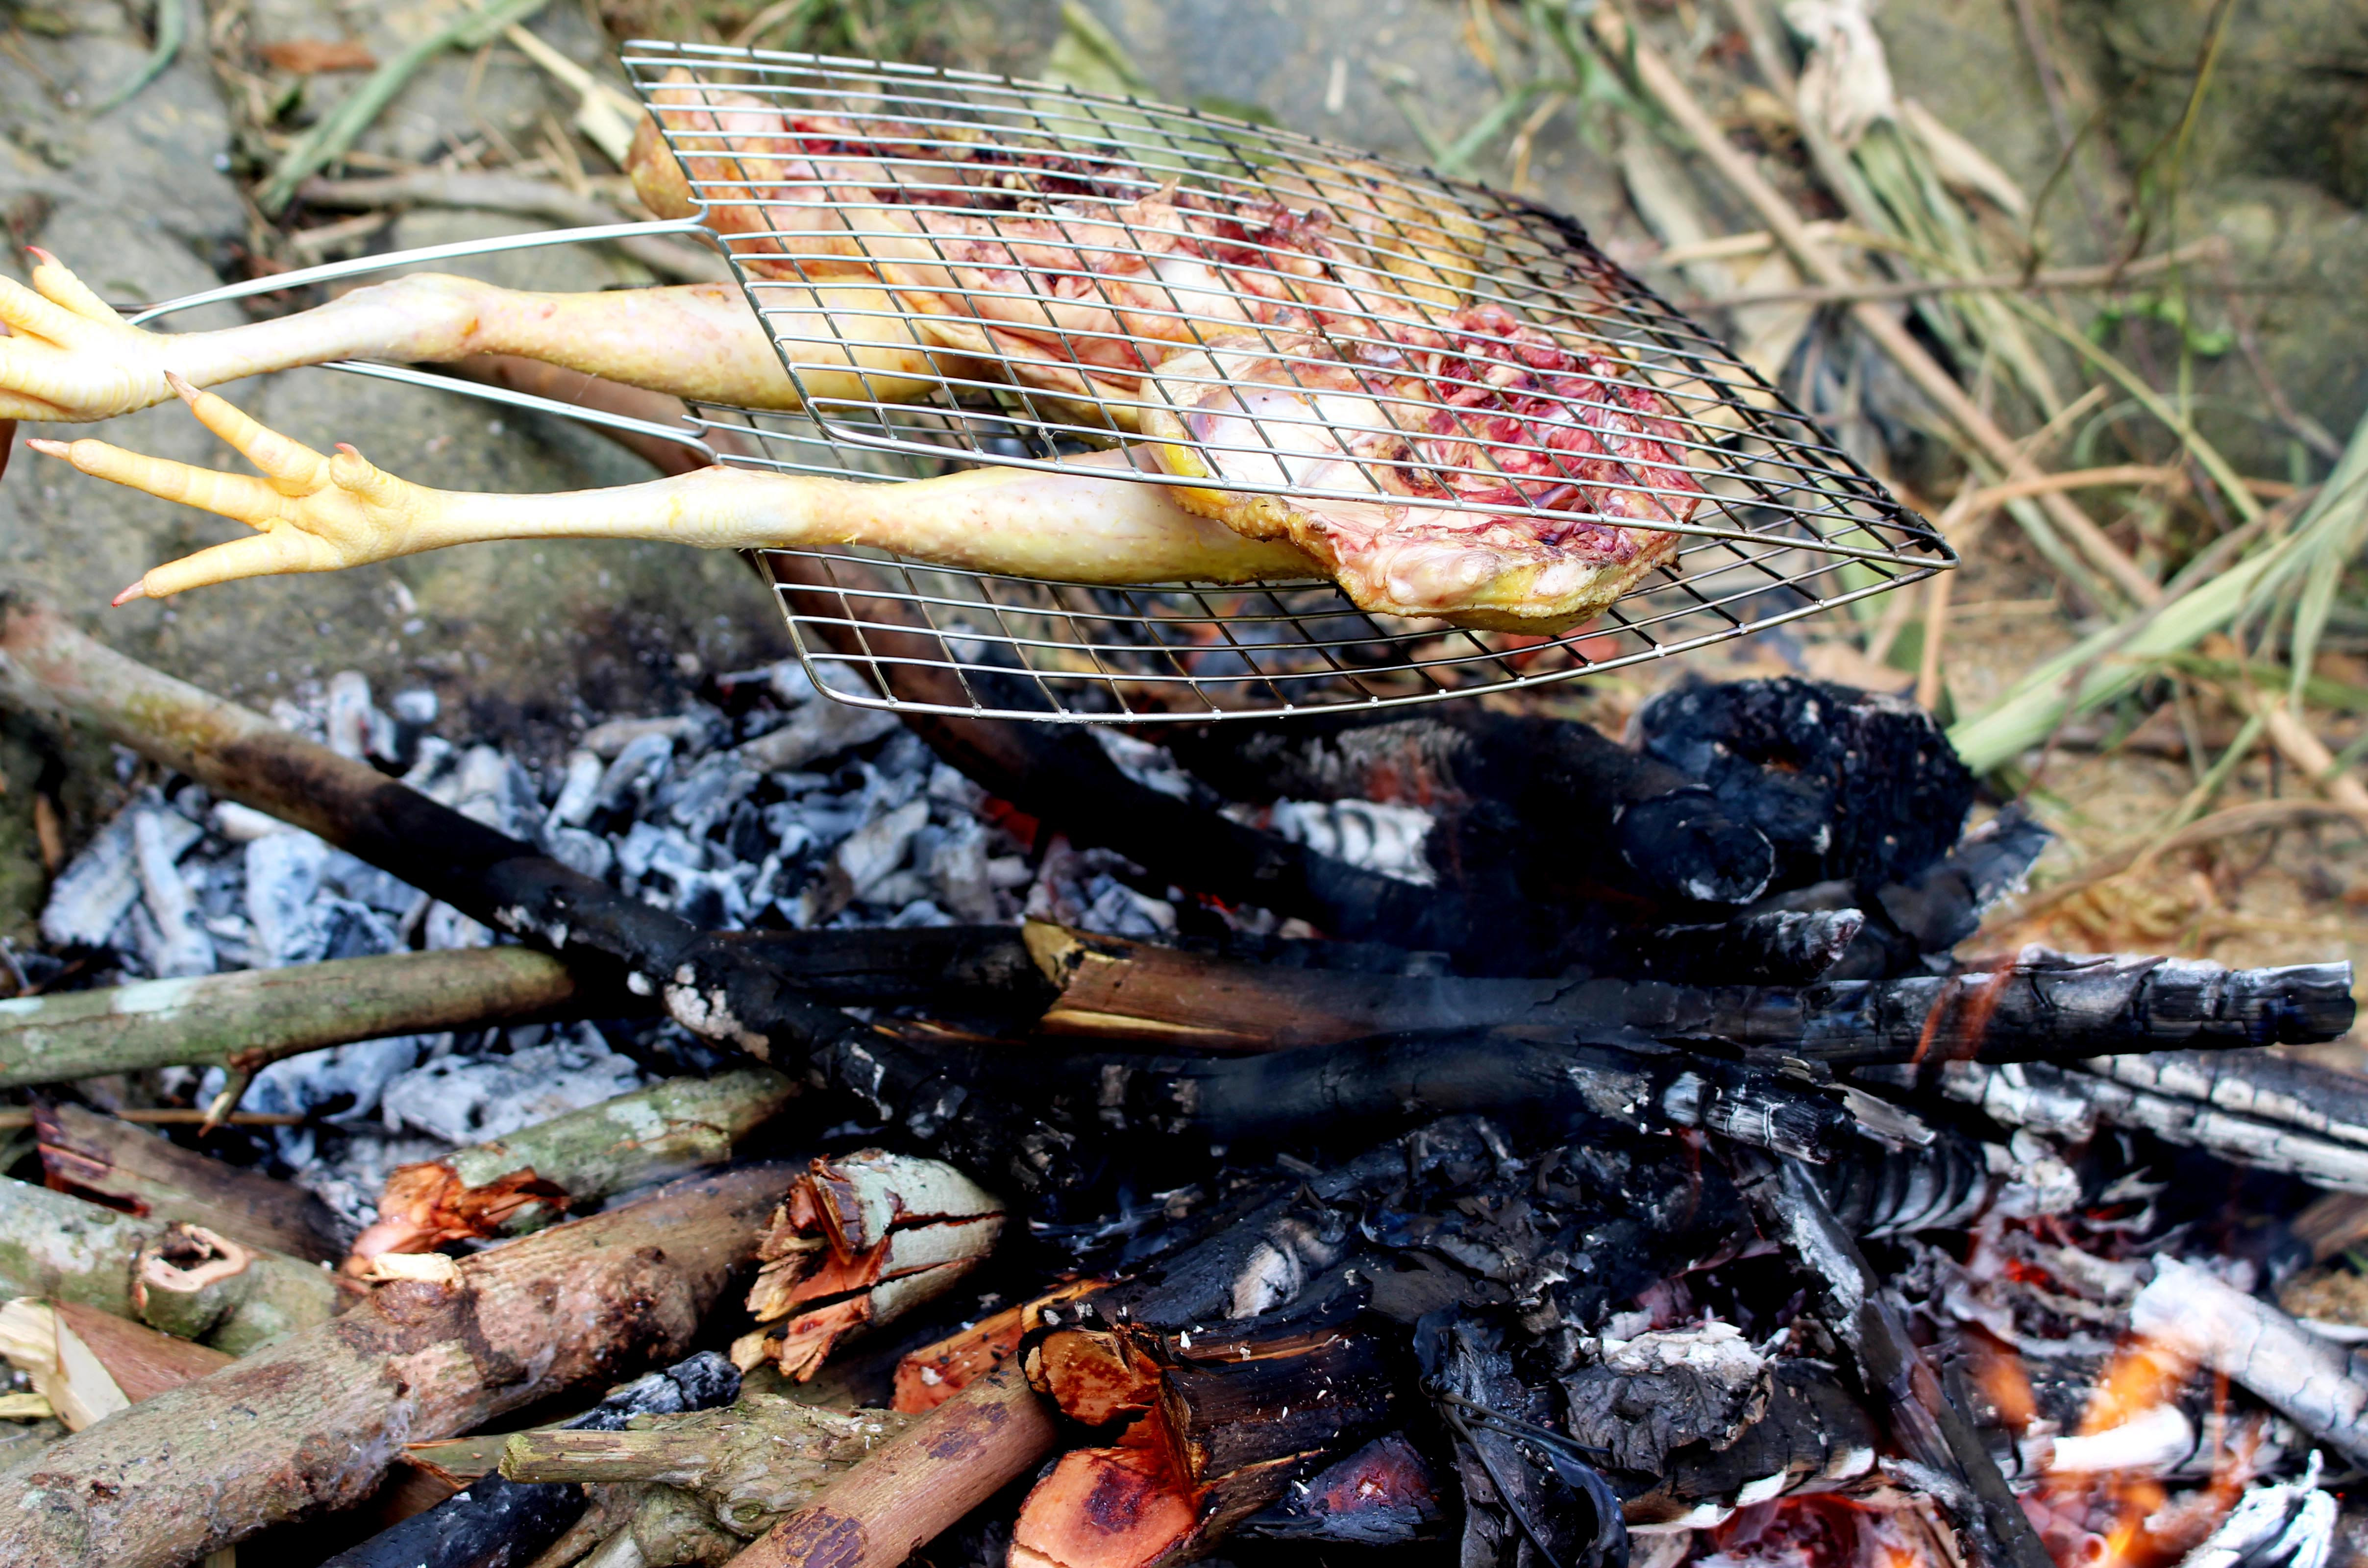 Vào rừng giữa những ngày nắng nóng, mọi người không quên mang theo những đặc sản như gà đồi, dê cỏ… và có thể bắt cả cá khe để nướng trên những bếp than hồng.